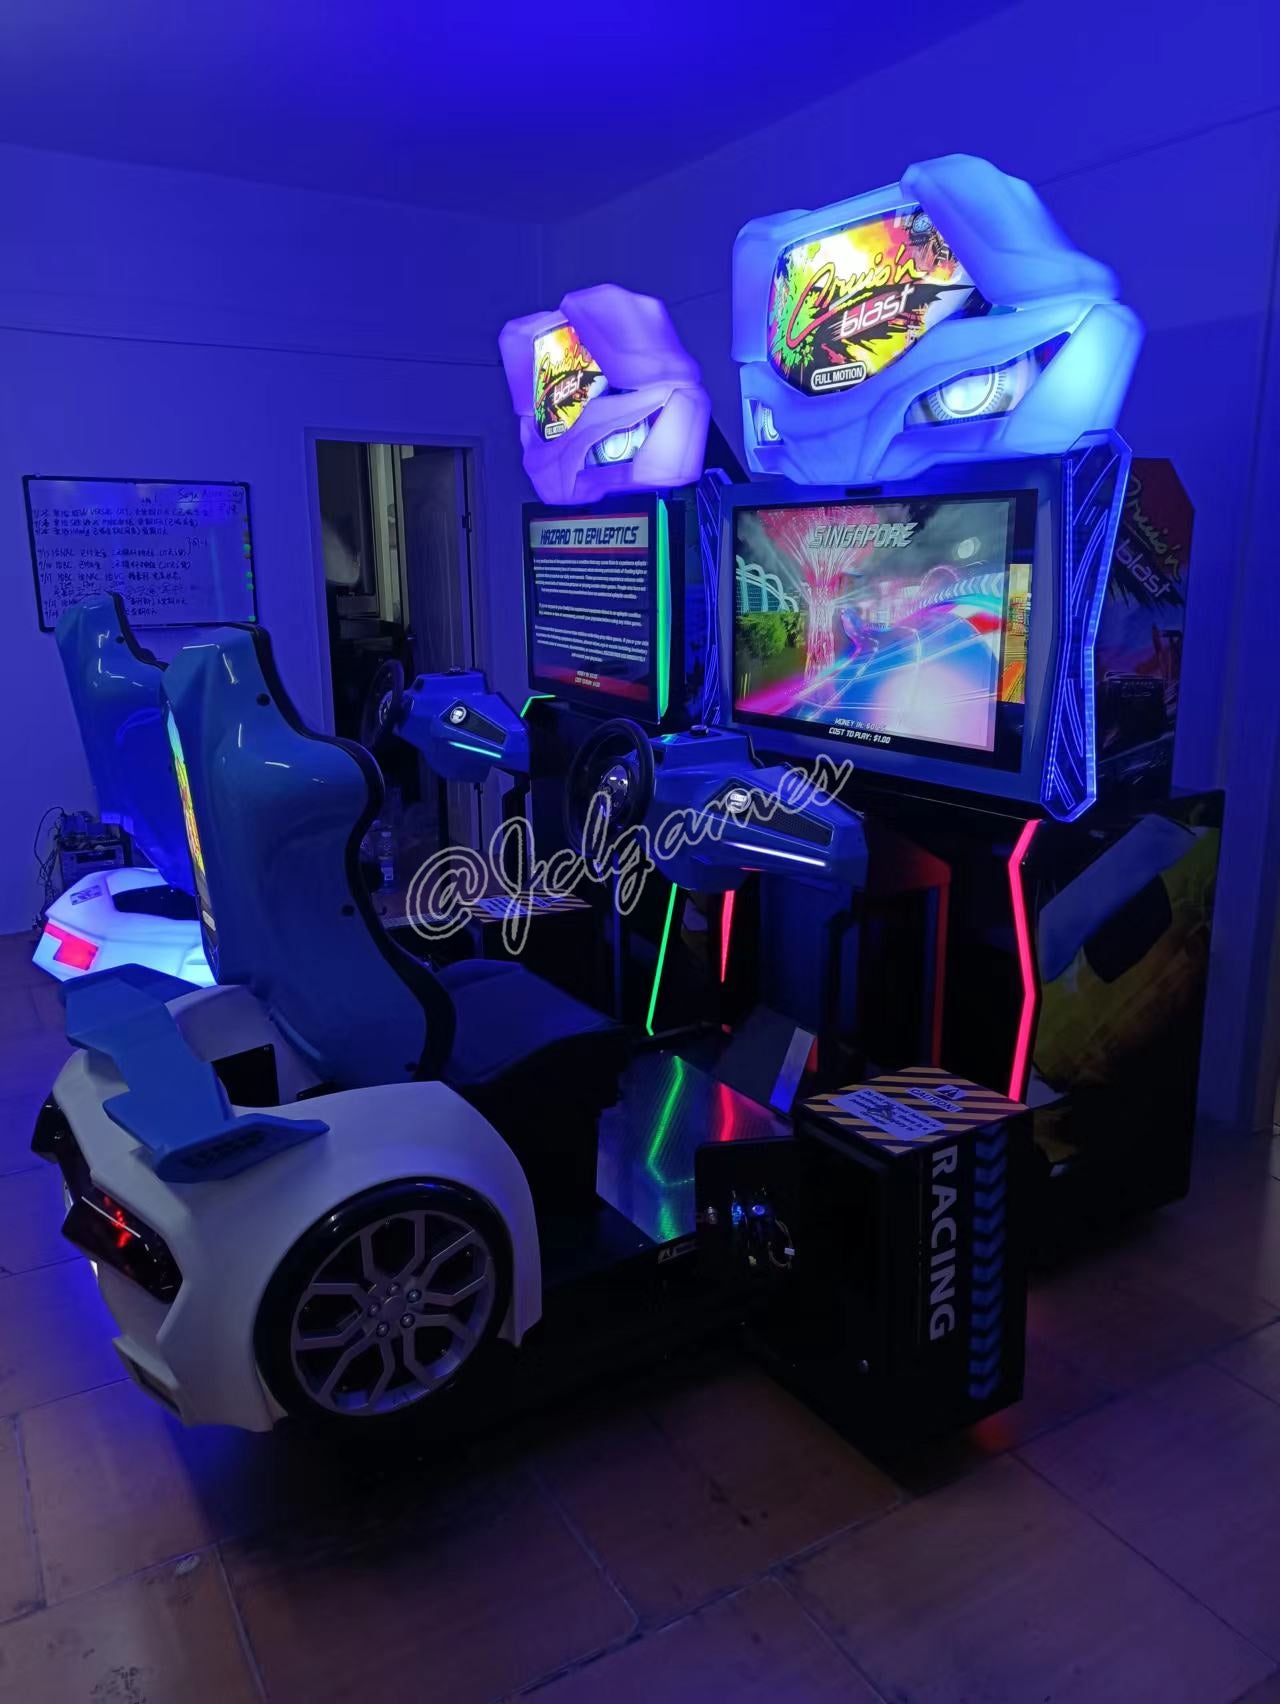 Buy Cruis'n Blast Arcade Online at $12499